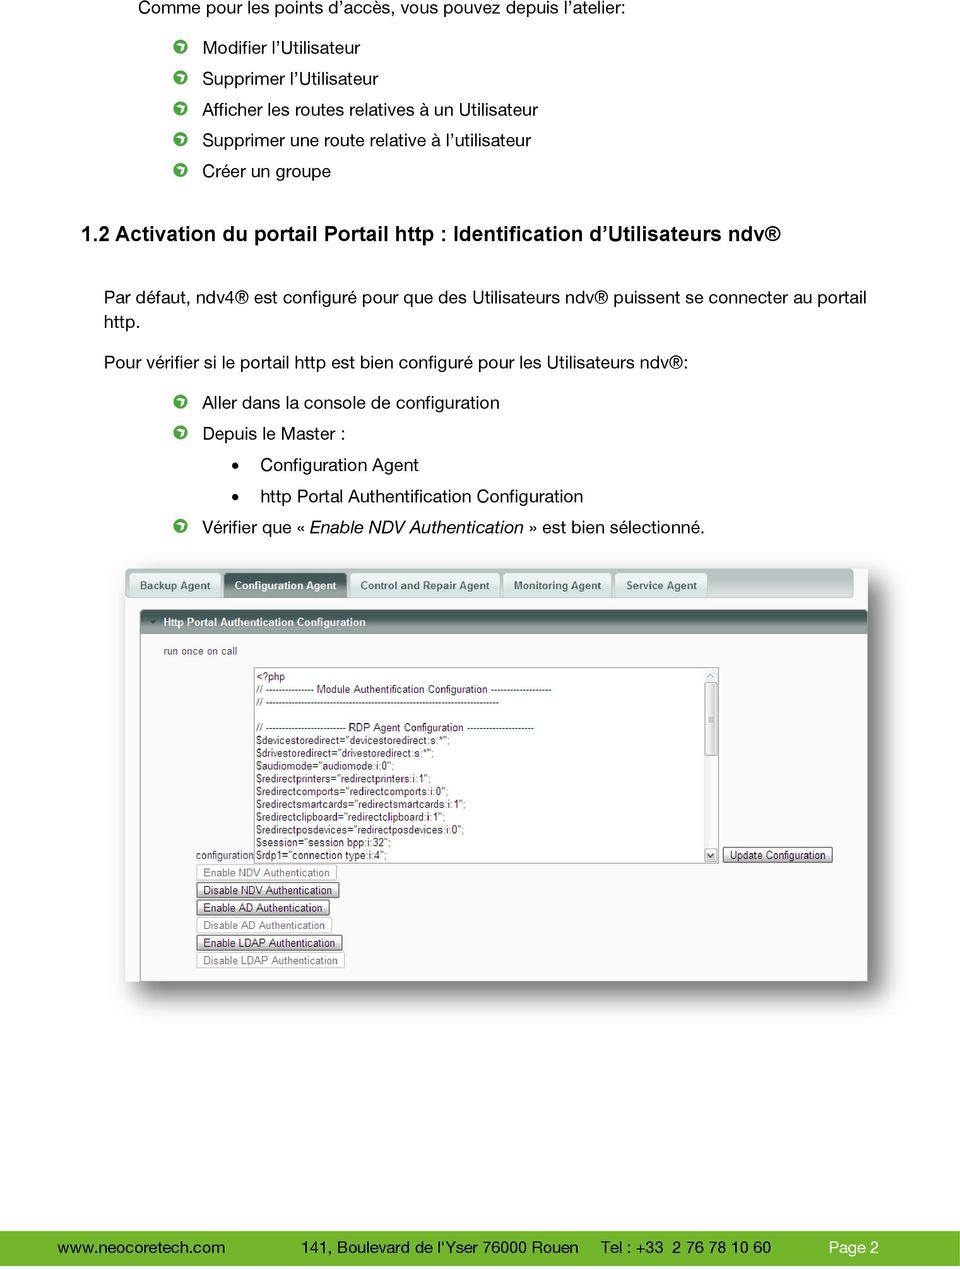 2 Activation du portail Portail http : Identification d Utilisateurs ndv Par défaut, ndv4 est configuré pour que des Utilisateurs ndv puissent se connecter au portail http.